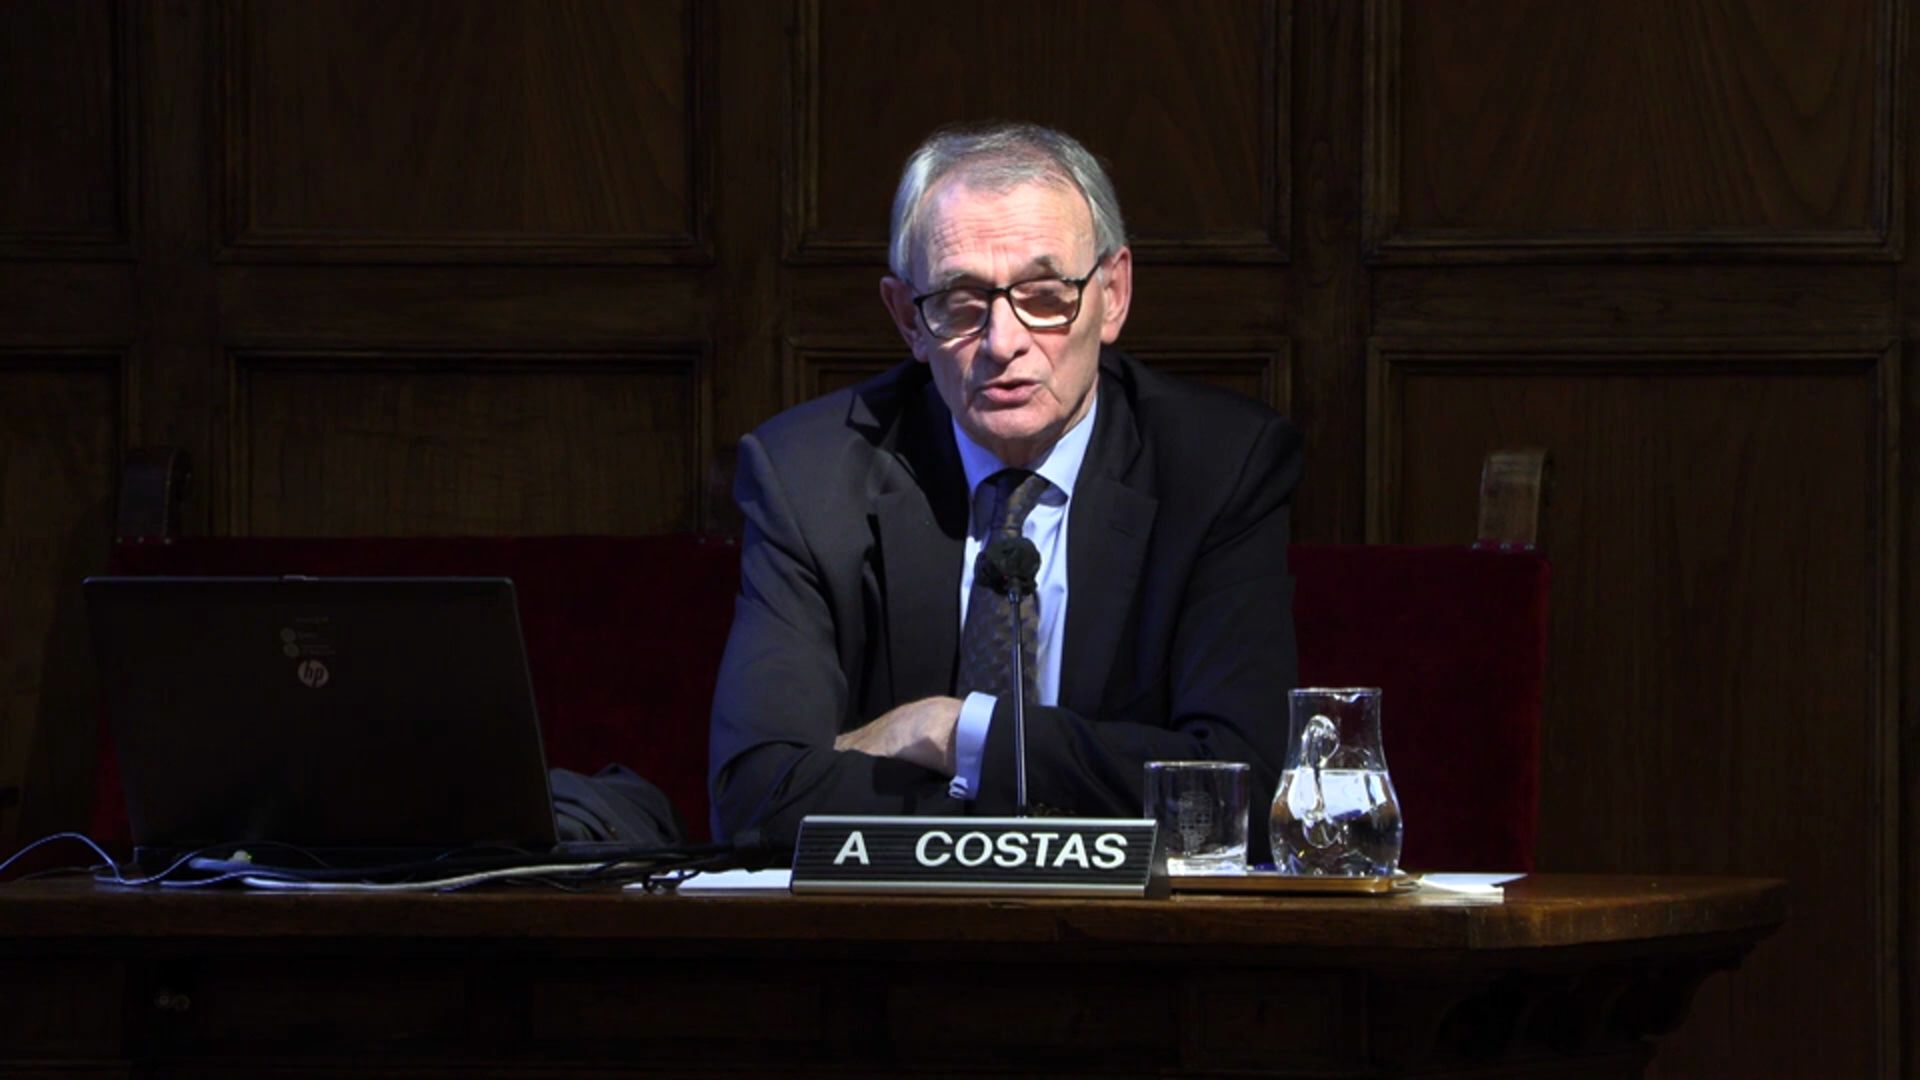 Conferència: Un contrato social para el mundo postpandémico. Dr. Antón Costas - Ateneu UB